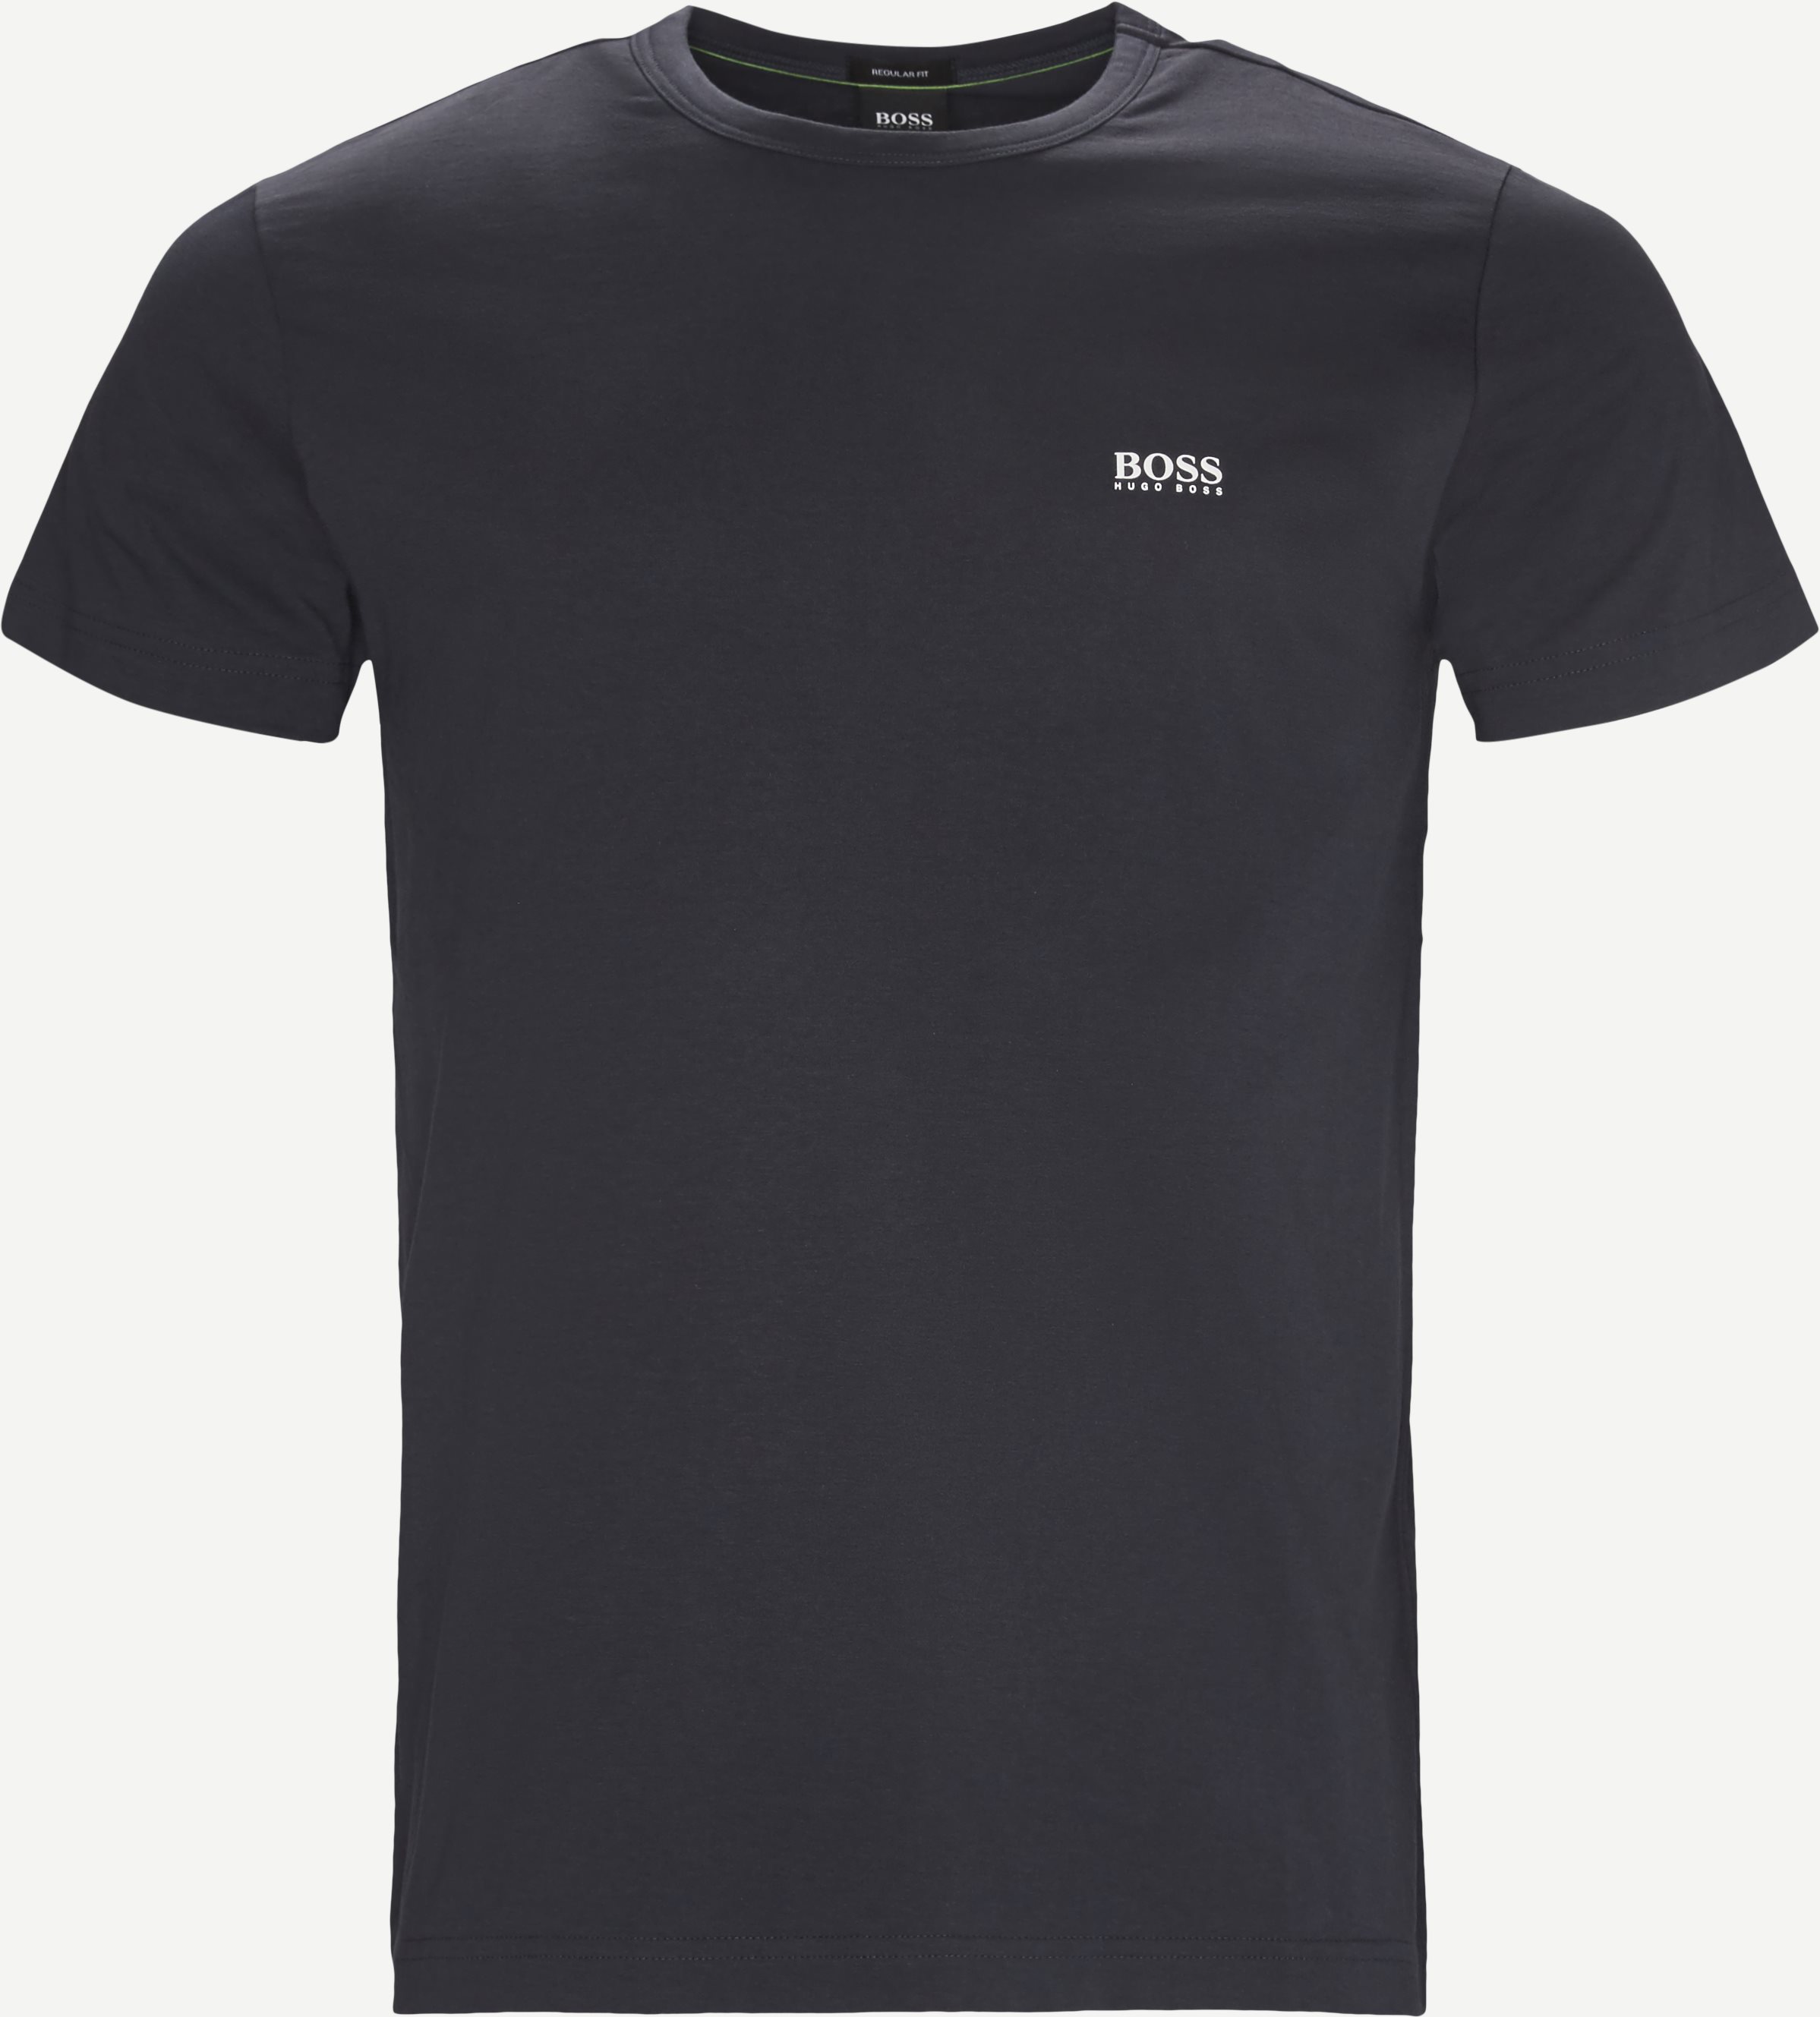 Tee T-shirt - T-shirts - Regular fit - Blå